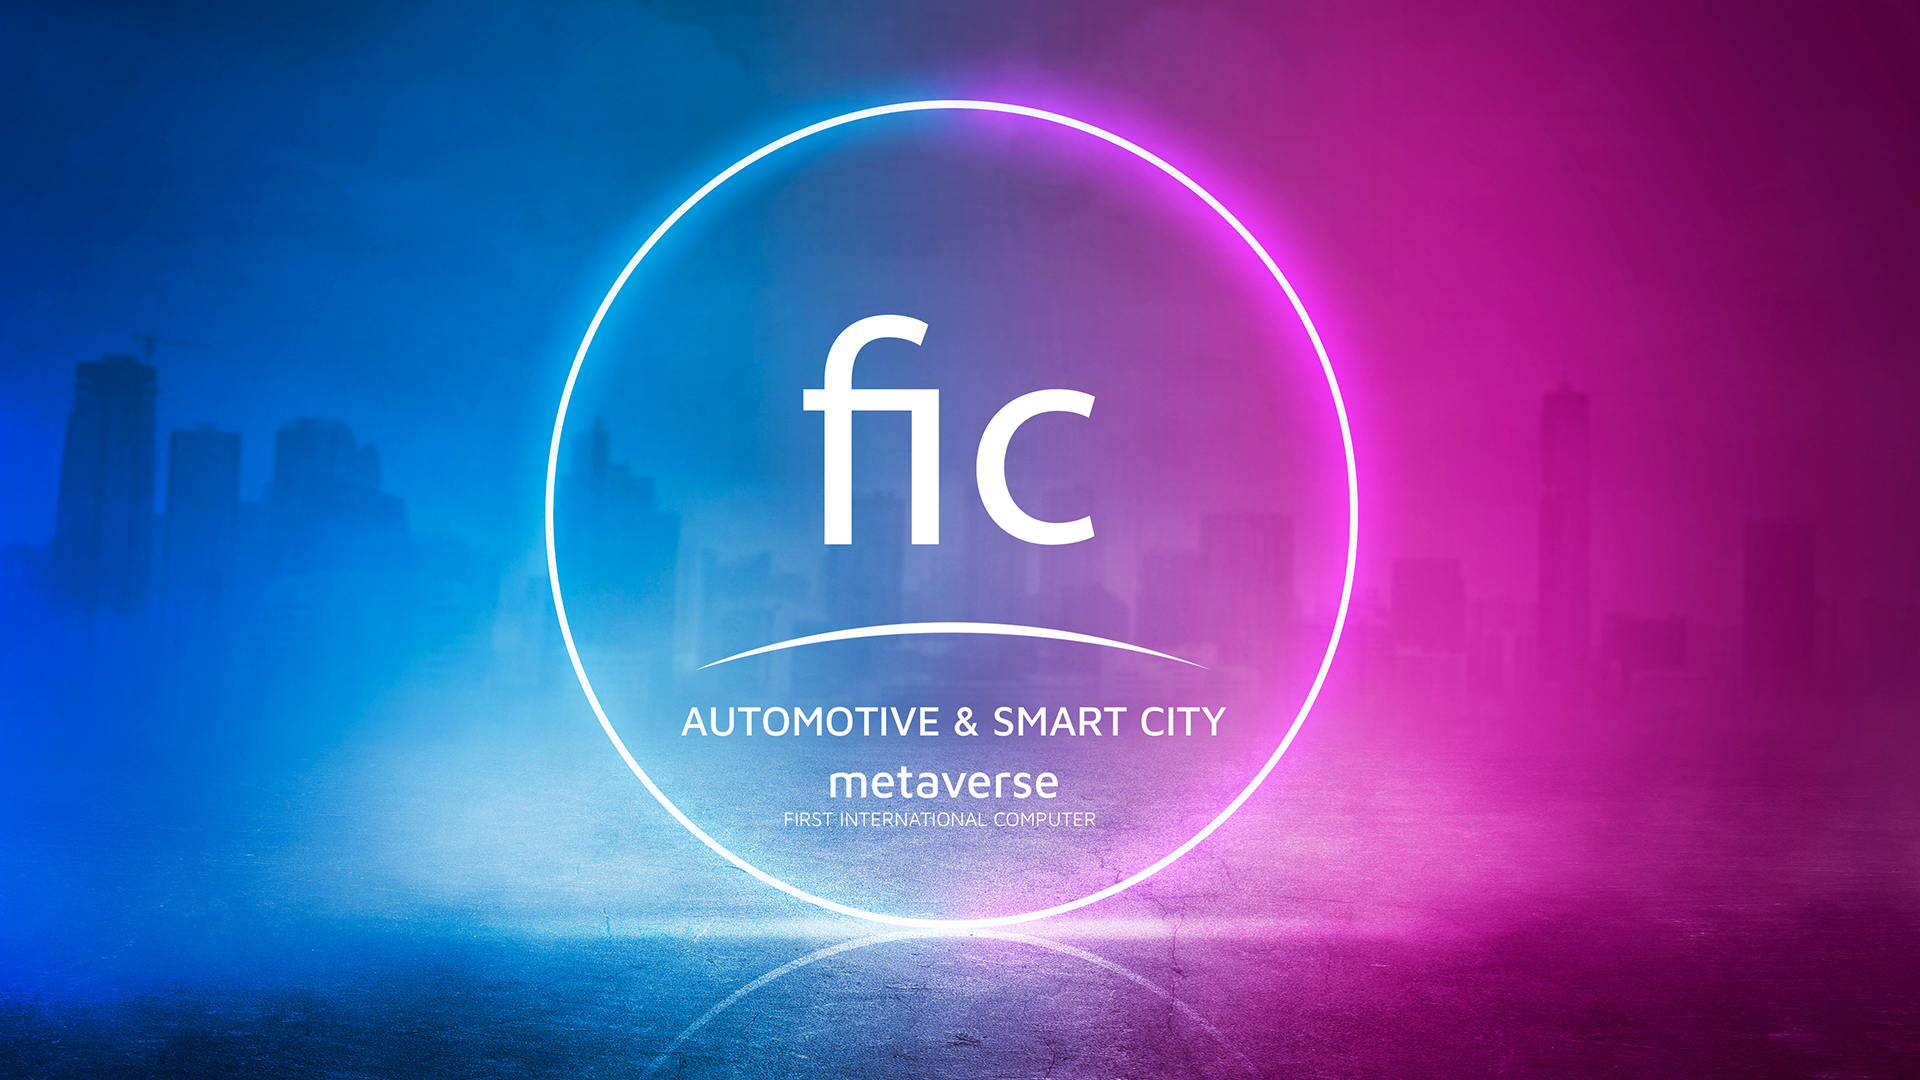 FIC 大眾電腦在未來將專注於車與智慧城市相關的元宇宙雲端業務